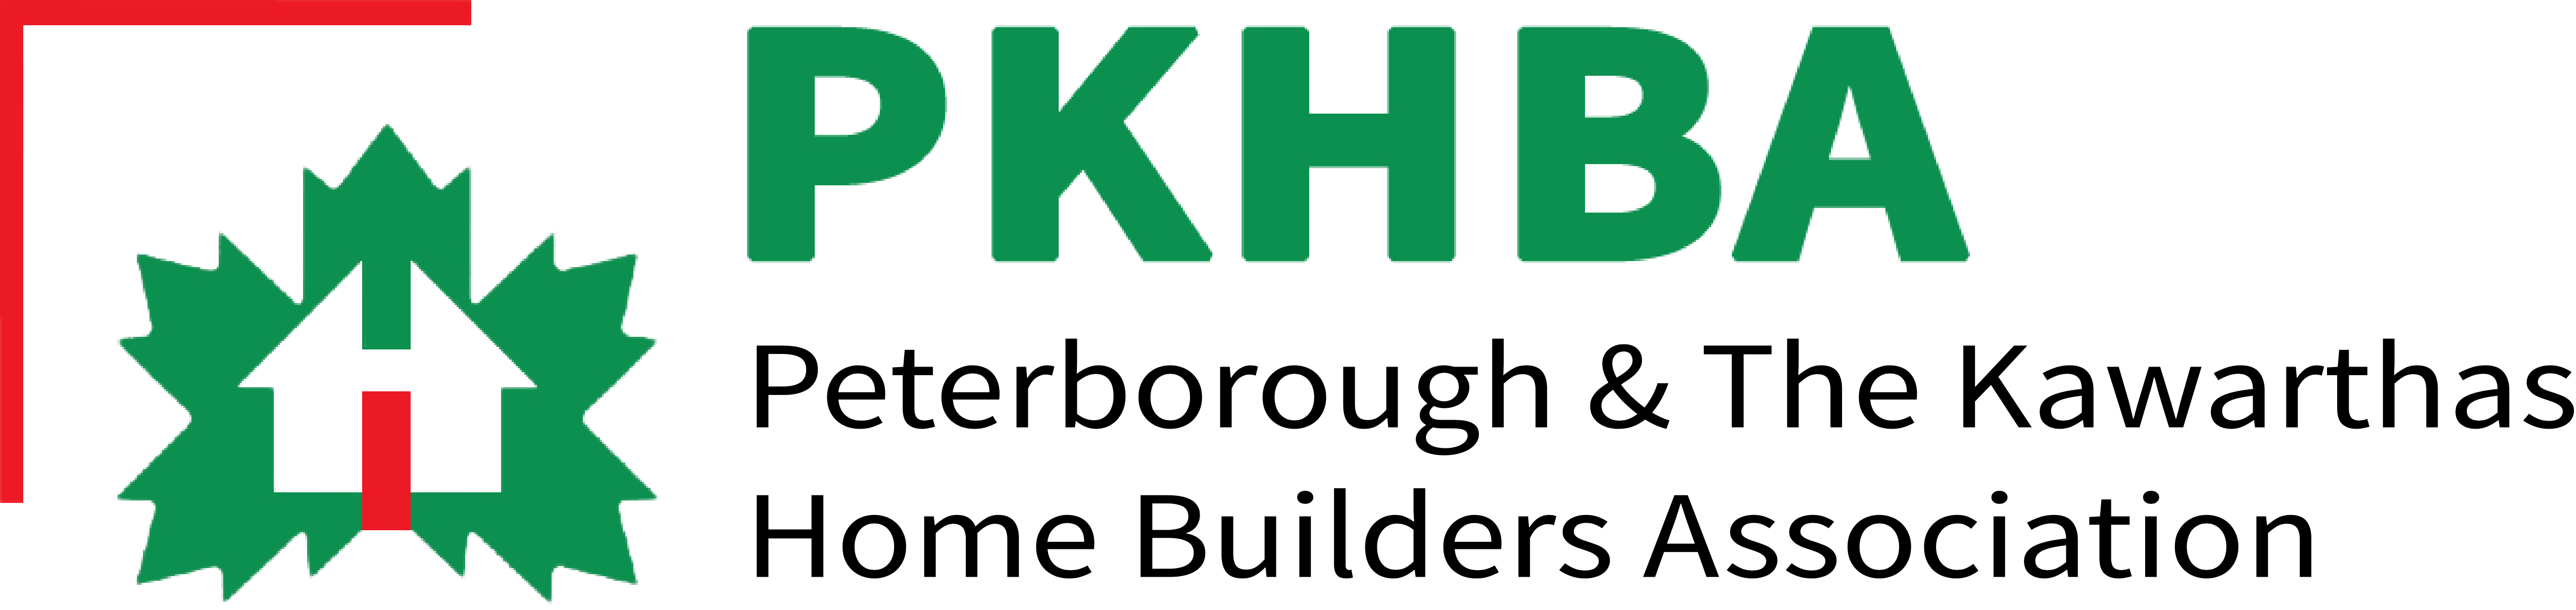 PKHBA Logo hi-res